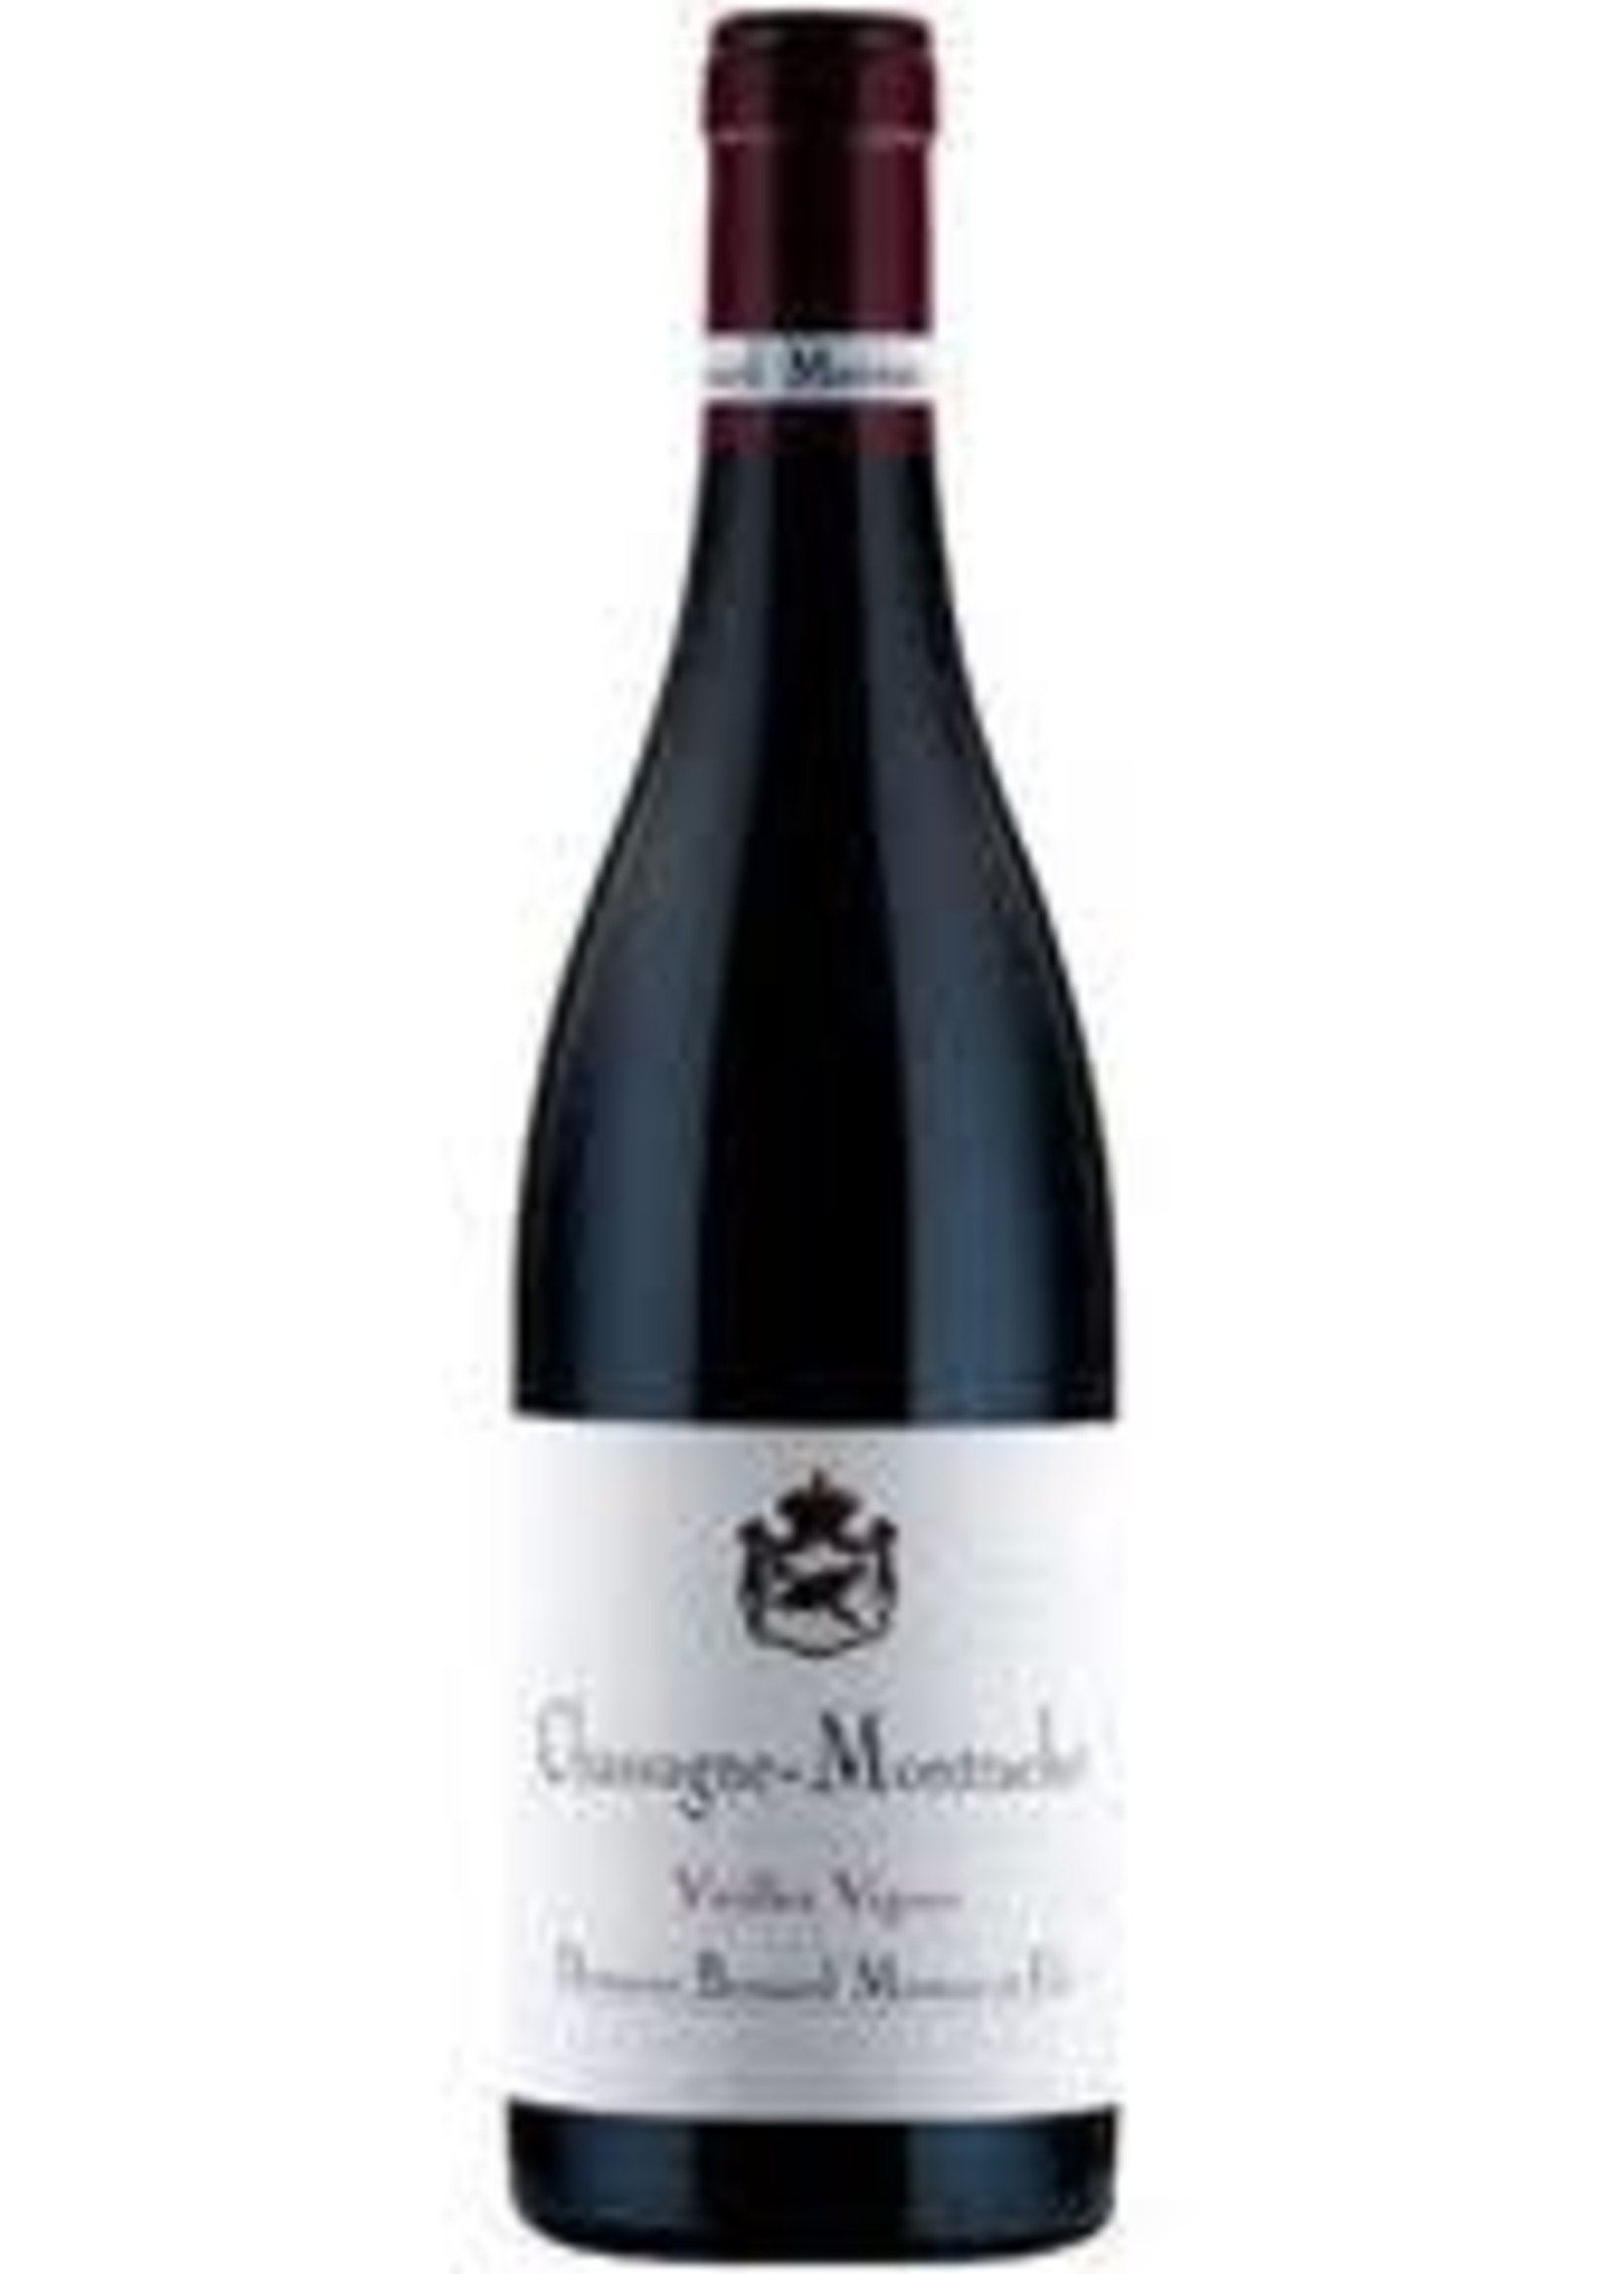 Bernard Moreau et Fils 2019 Chassagne Montrachet Rouge Vieilles Vignes 750ml